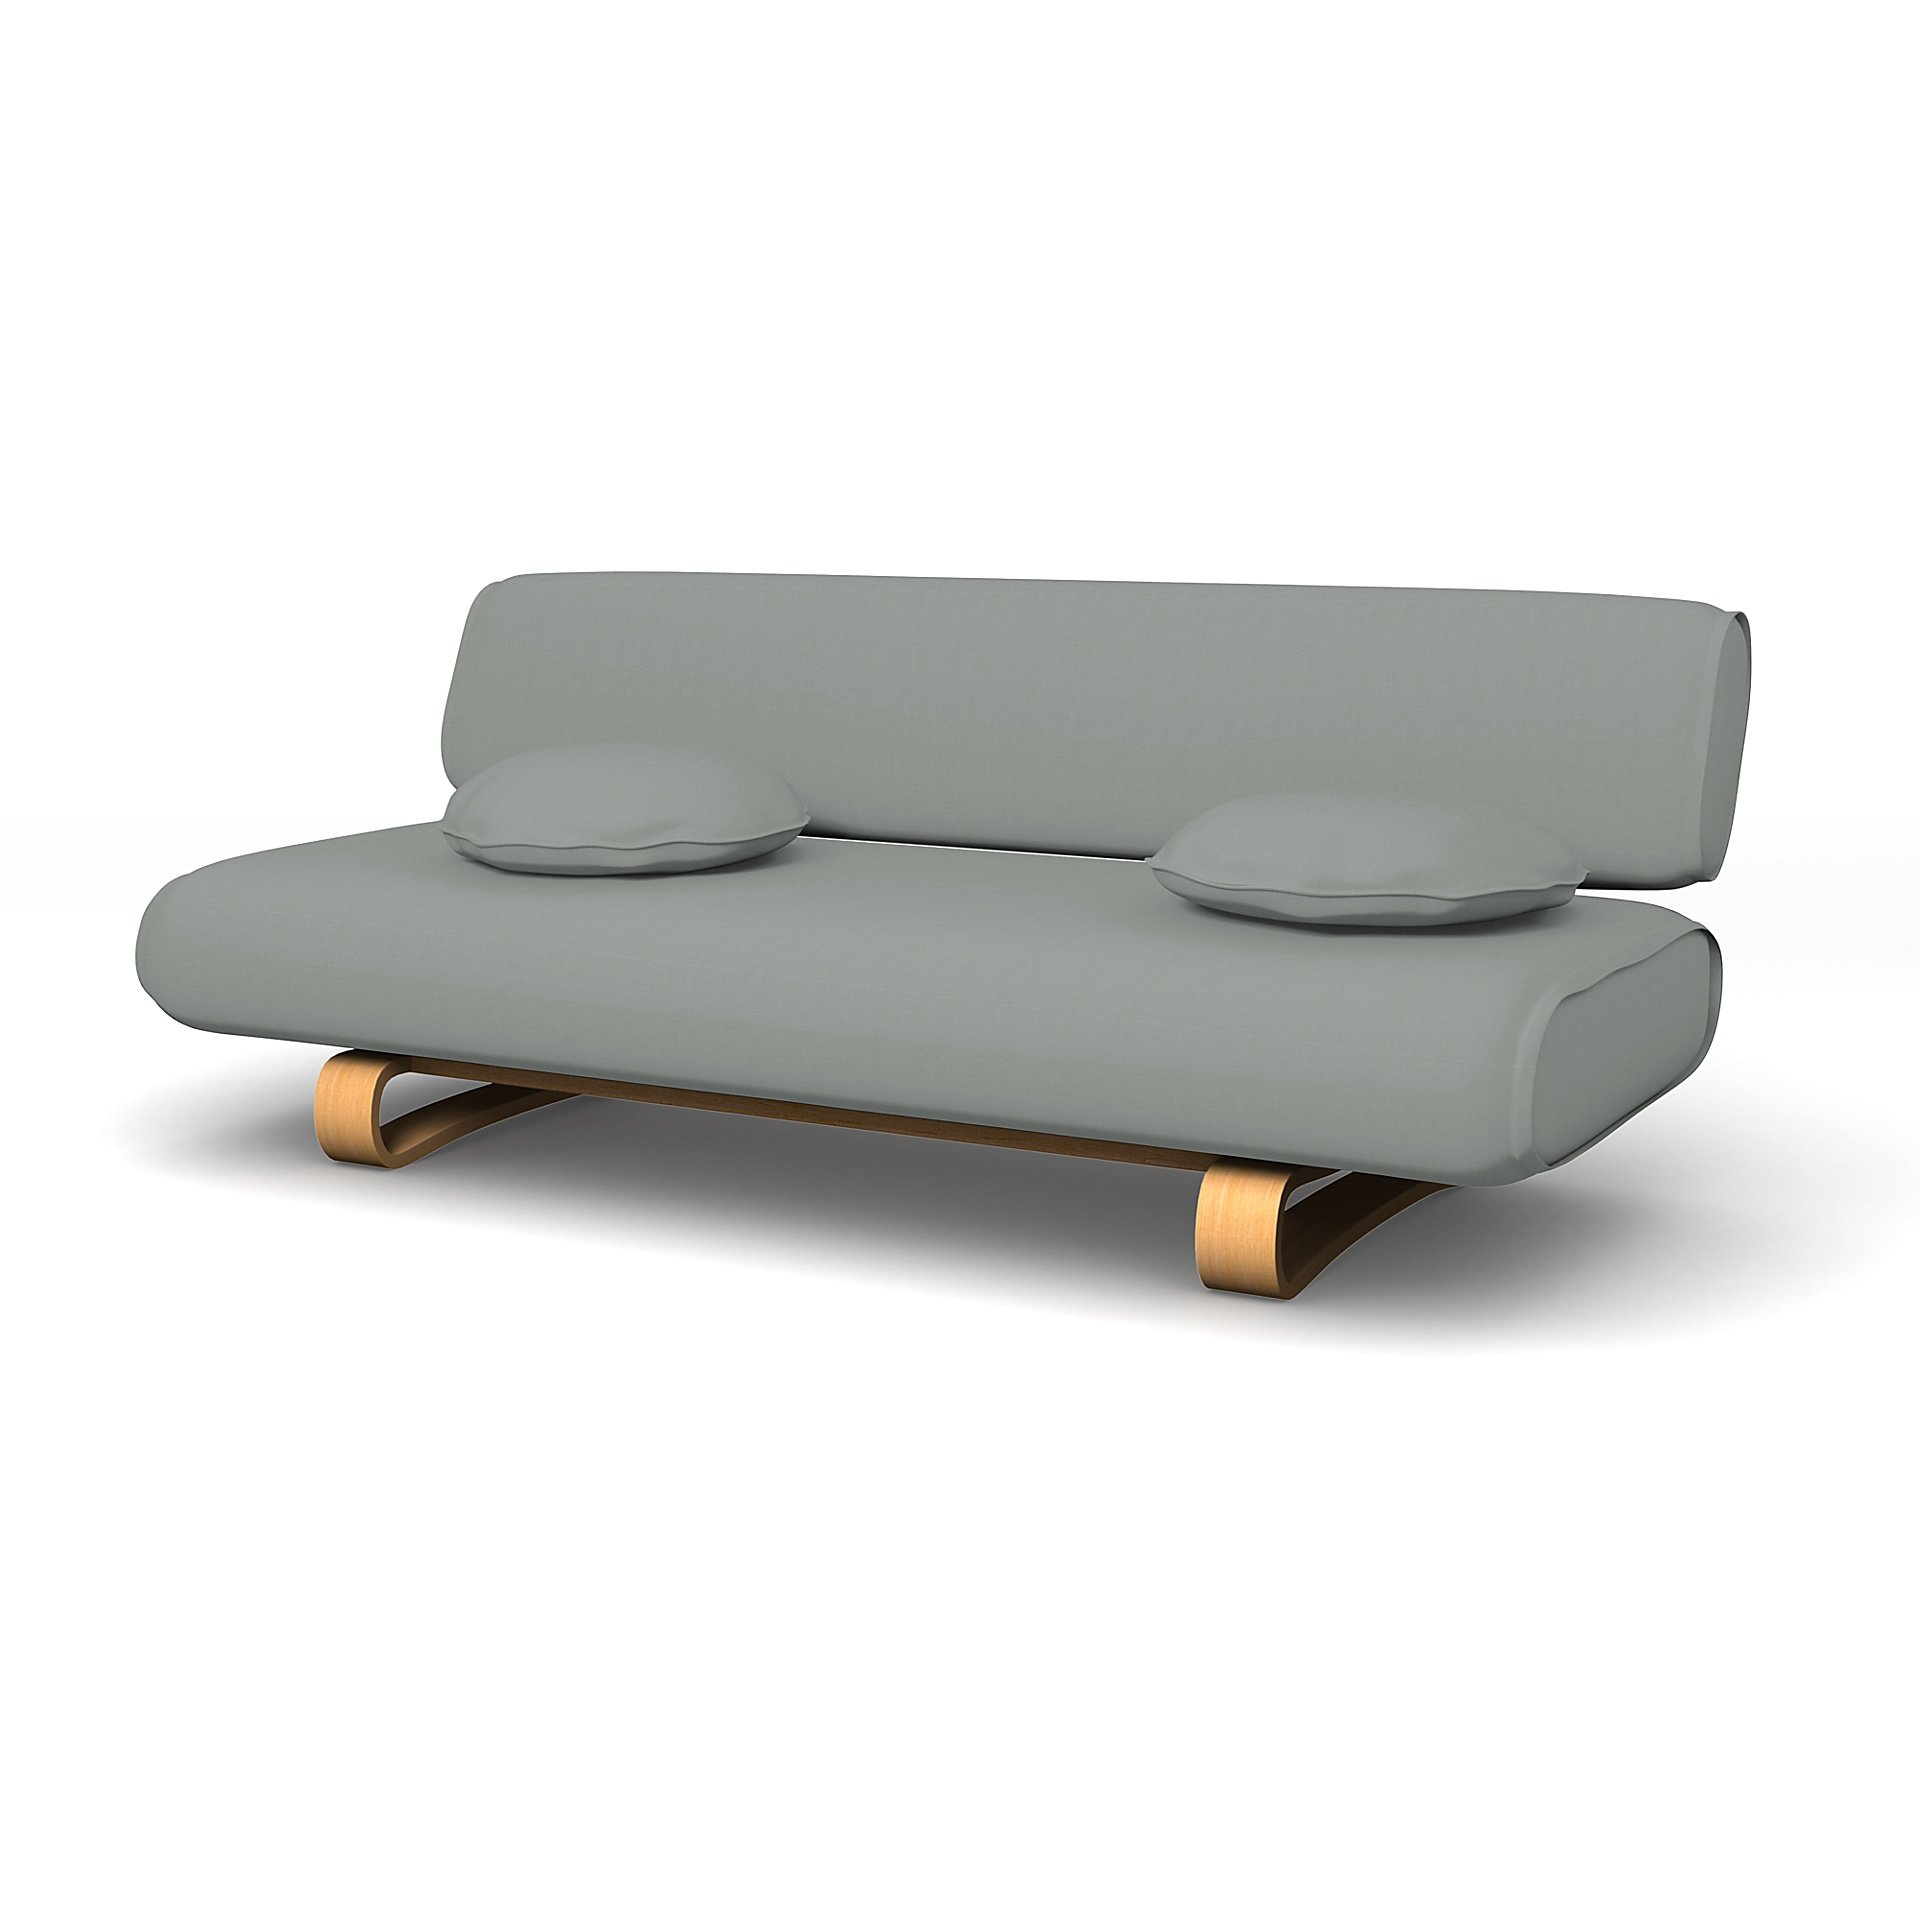 IKEA - Allerum Sofa Bed Cover, Drizzle, Cotton - Bemz